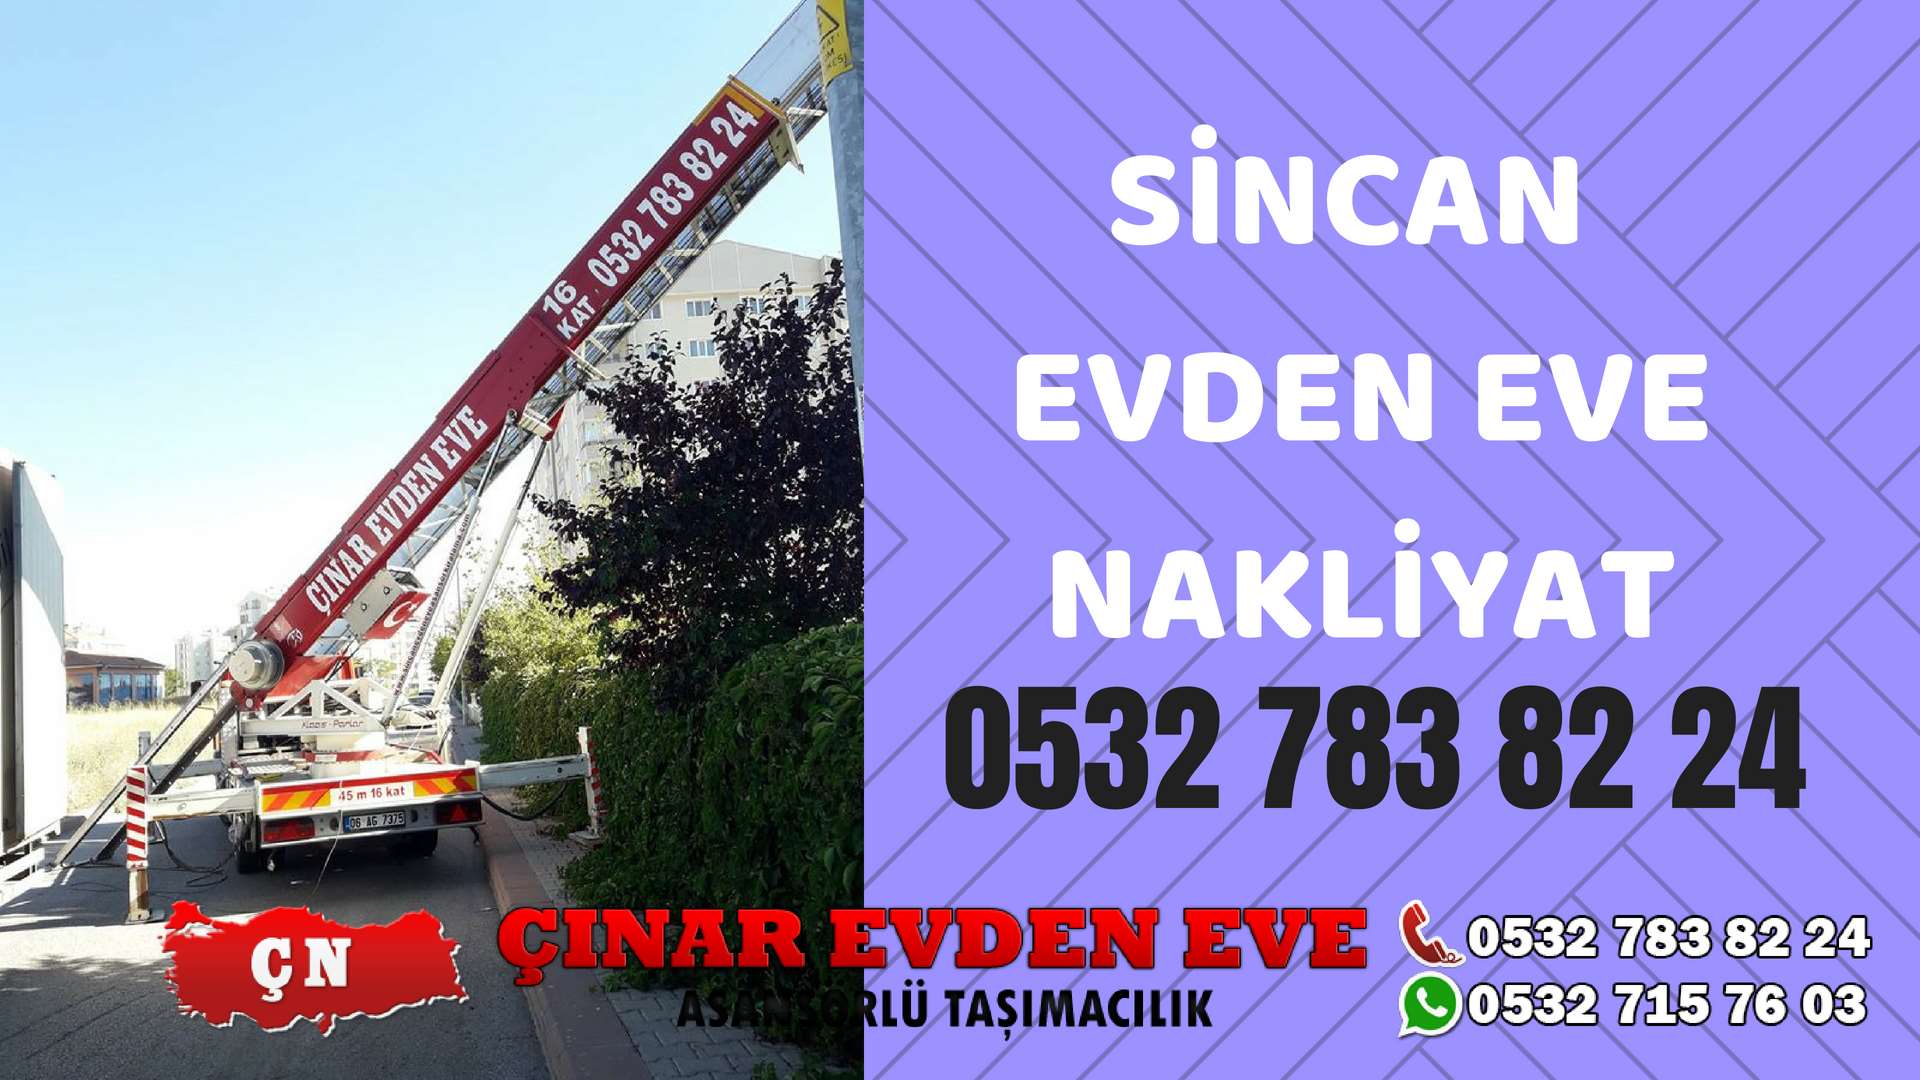 Ankara  Sincan Evden Eve Nakliyat, Asansörlü Taşıma Çınar Nakliyat Sincan 0532 715 76 03